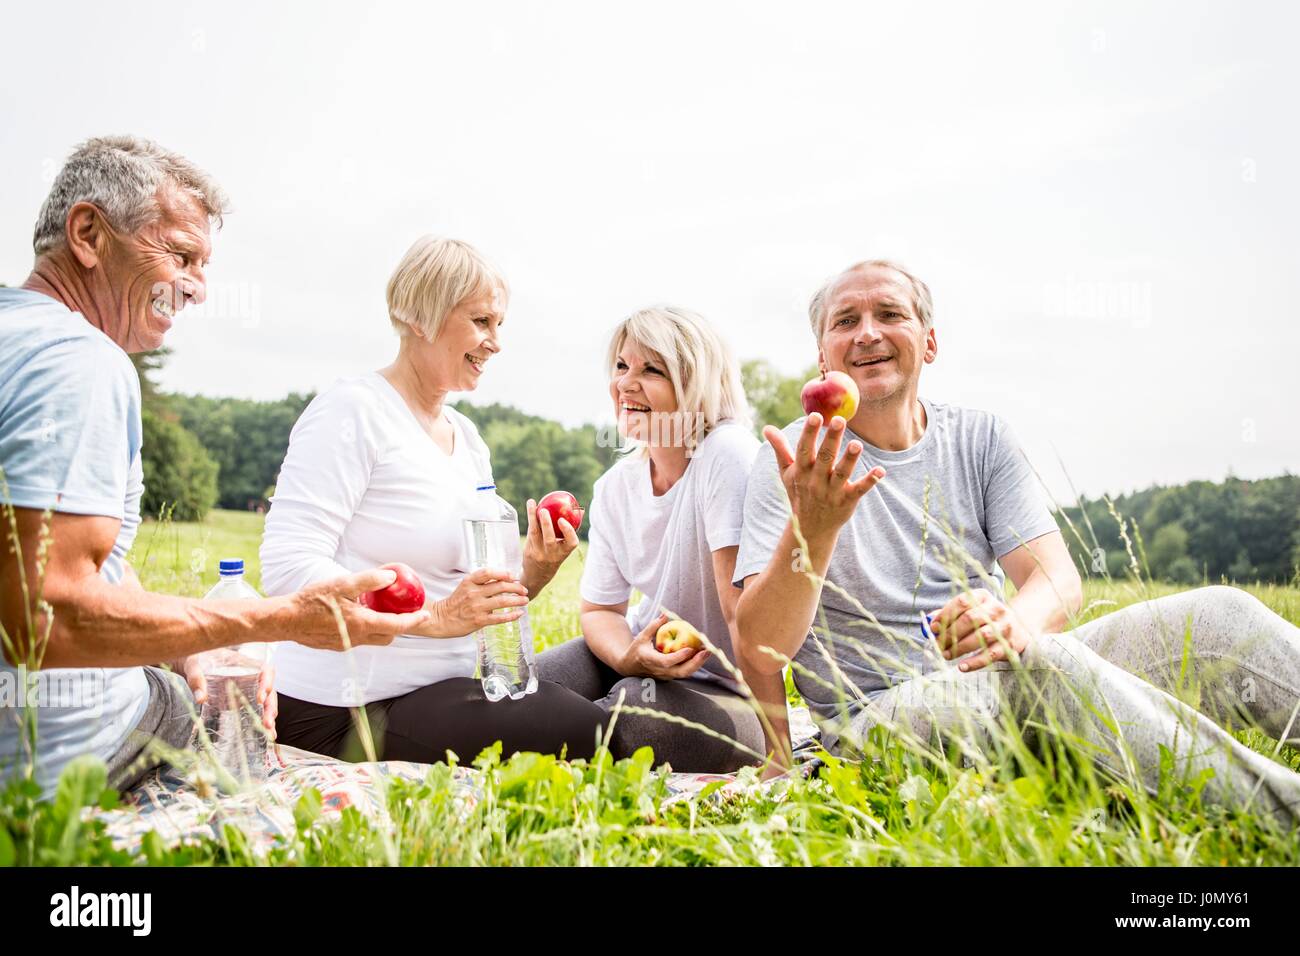 Quatre personnes assises sur l'herbe avec les pommes. Banque D'Images